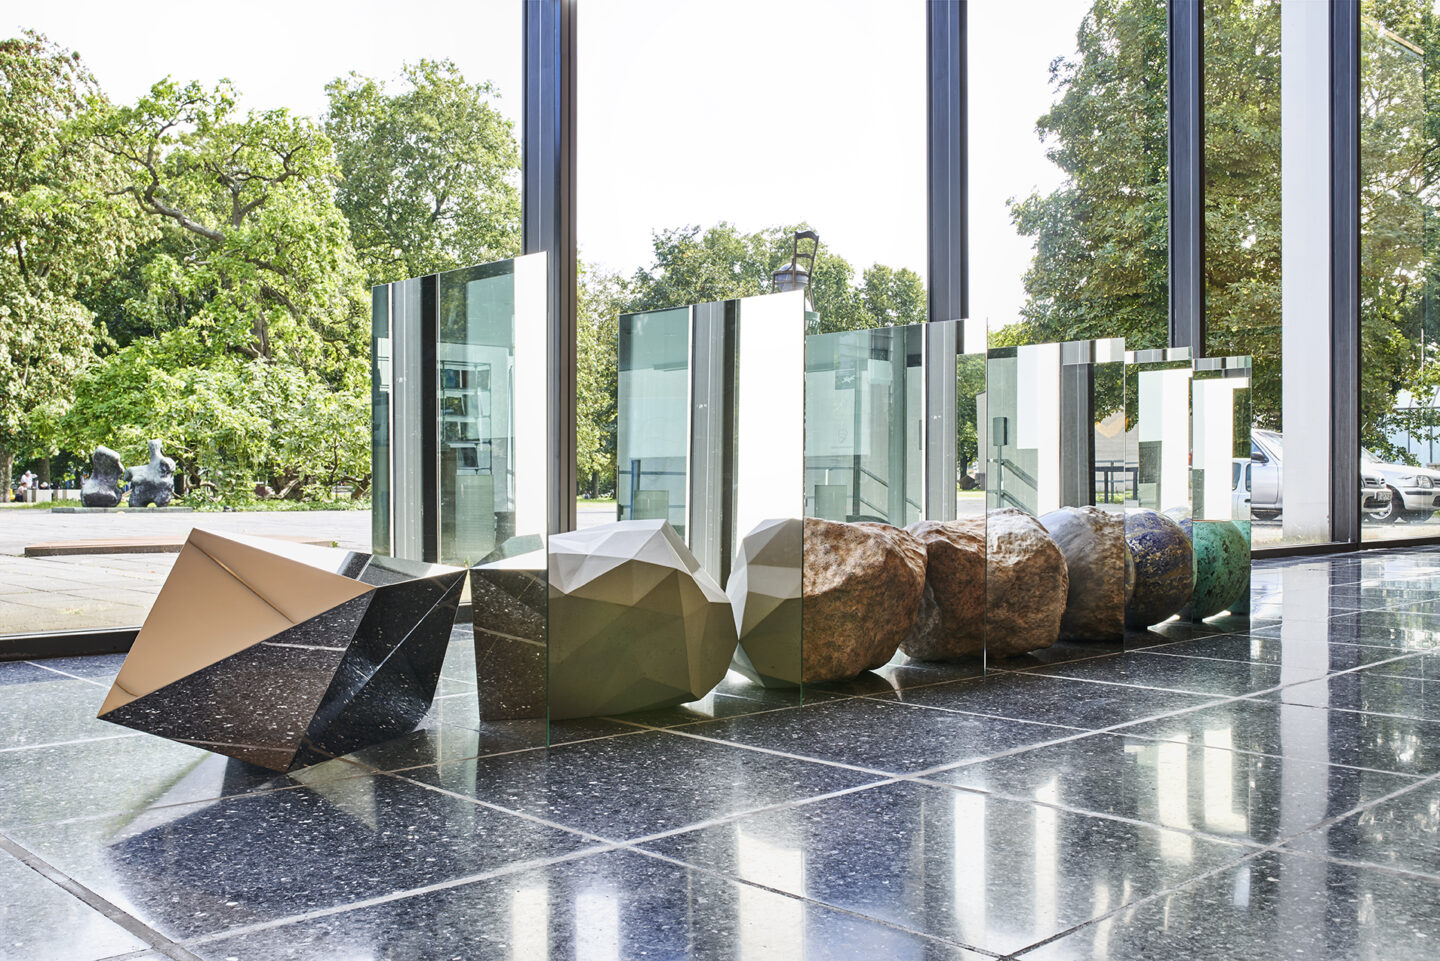 Alicja Kwade im Lehmbruck-Museum, Emergenz, 7 Objekte, (Steine, Kugel, Schale) die in einer Reihe hintereinander am Boden liegen, sind jeweils durch einen doppelseitigen Spiegel voneinander getrennt